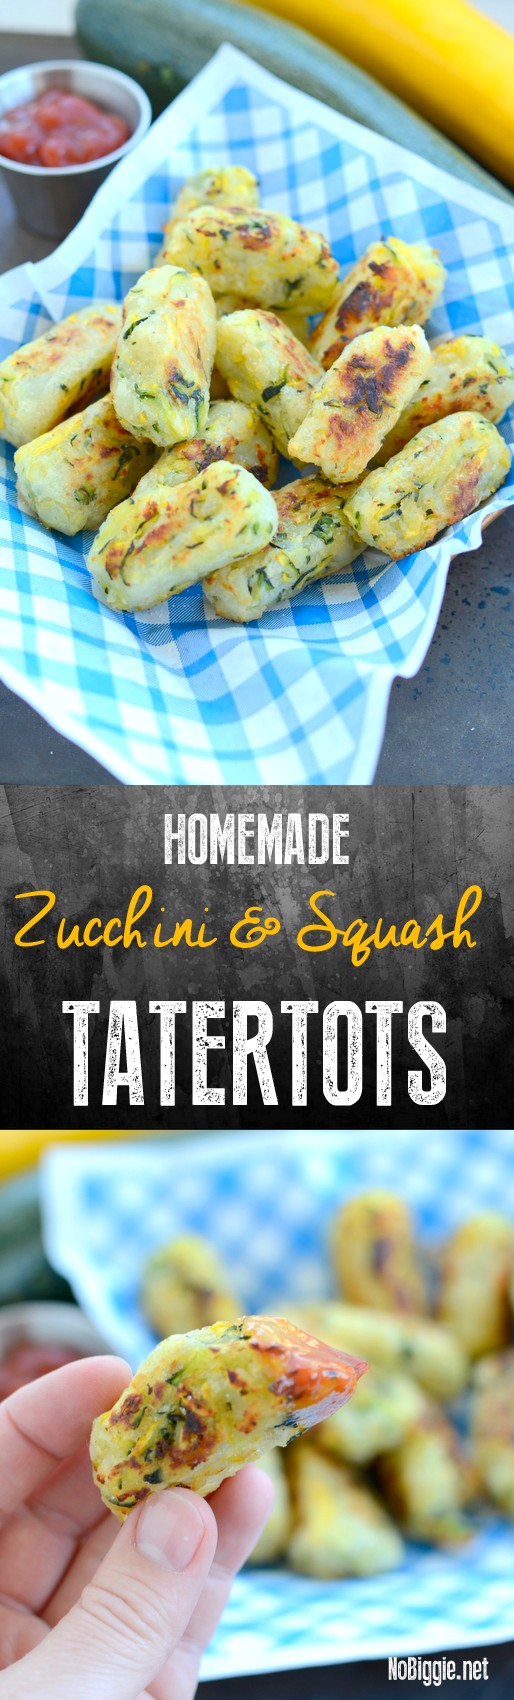 http://www.nobiggie.net/wp-content/uploads/2016/07/Homemade-zucchini-tatertots.jpg